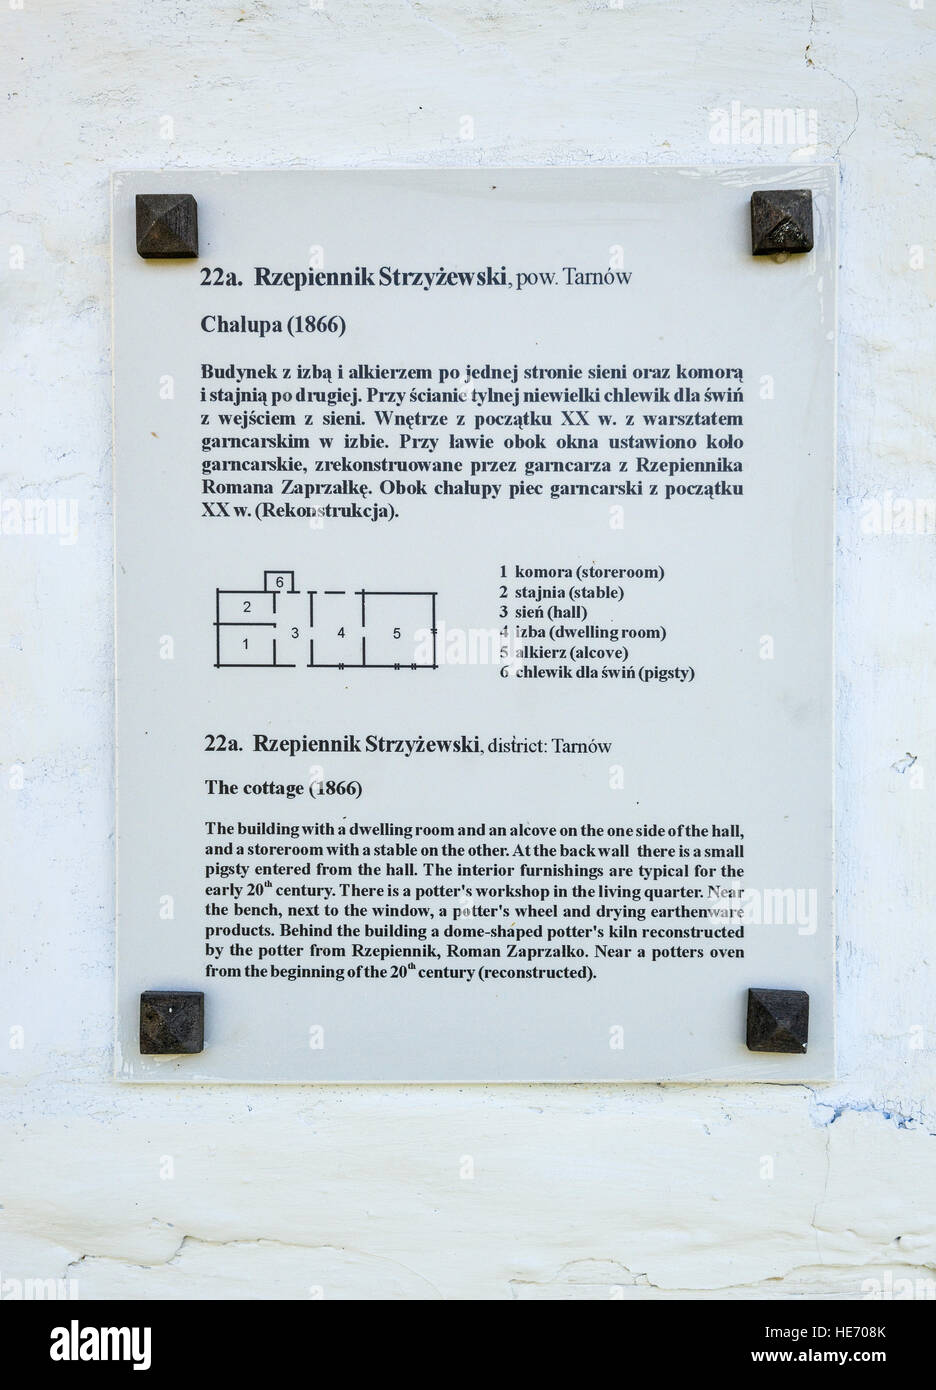 Bilingual sign at farmstead from Rzepiennik Strzyzewski, Pogorzanie ethnic group, Rural Architecture Museum in Sanok, Poland Stock Photo